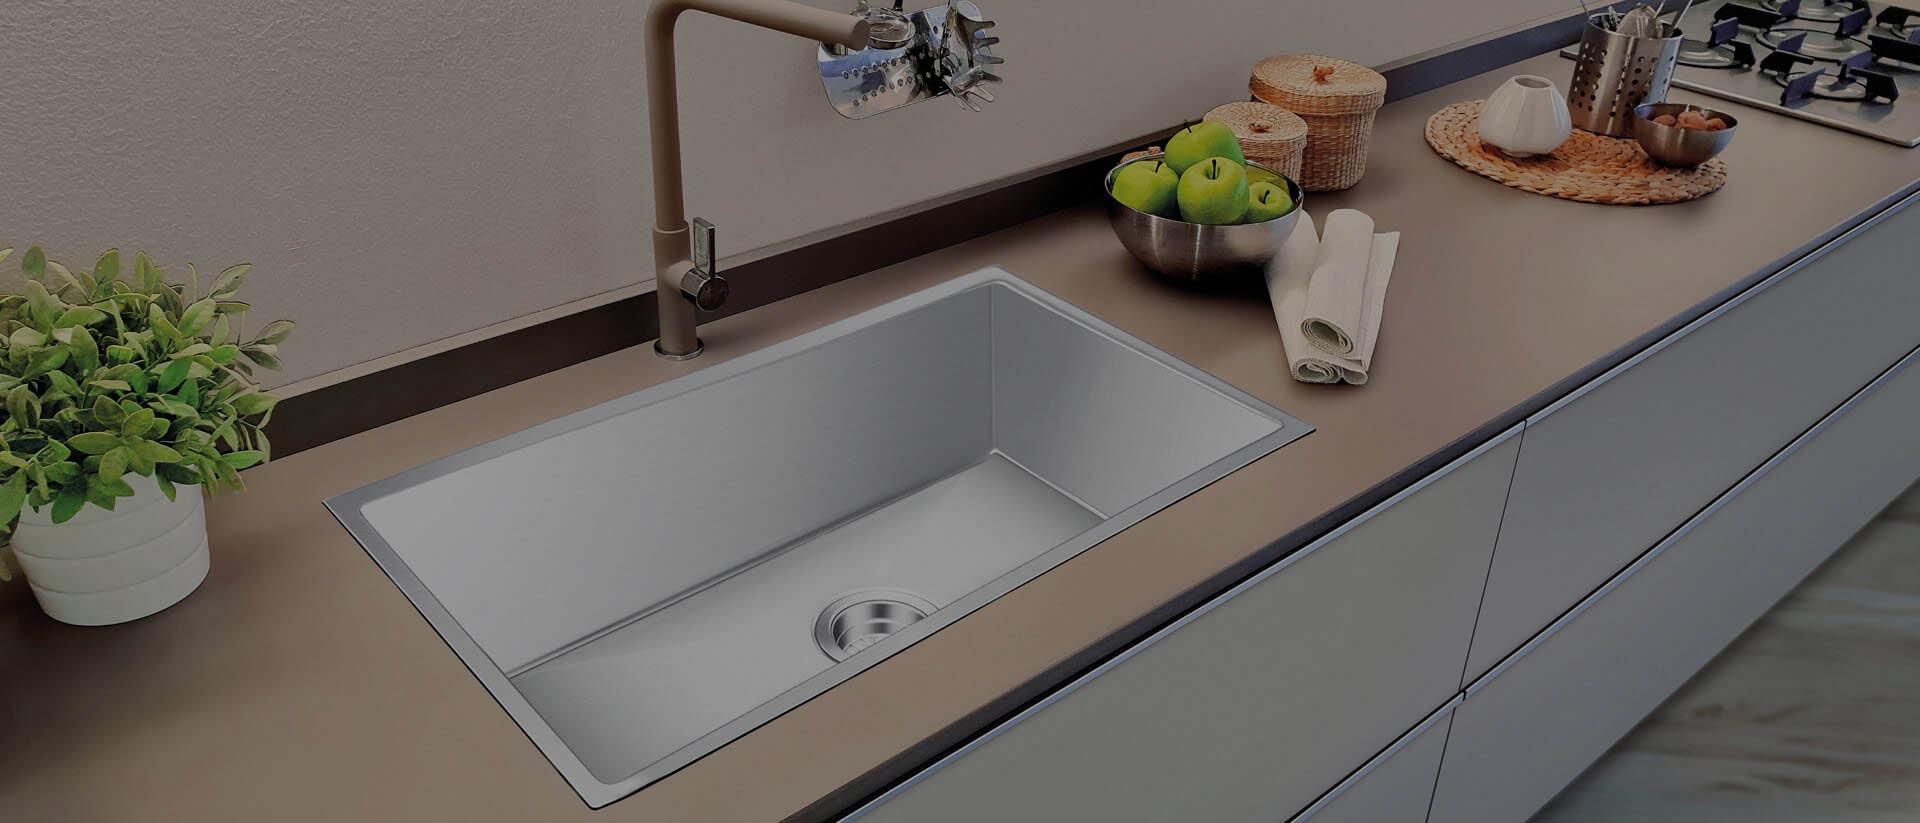 kitchen sink brand comparison